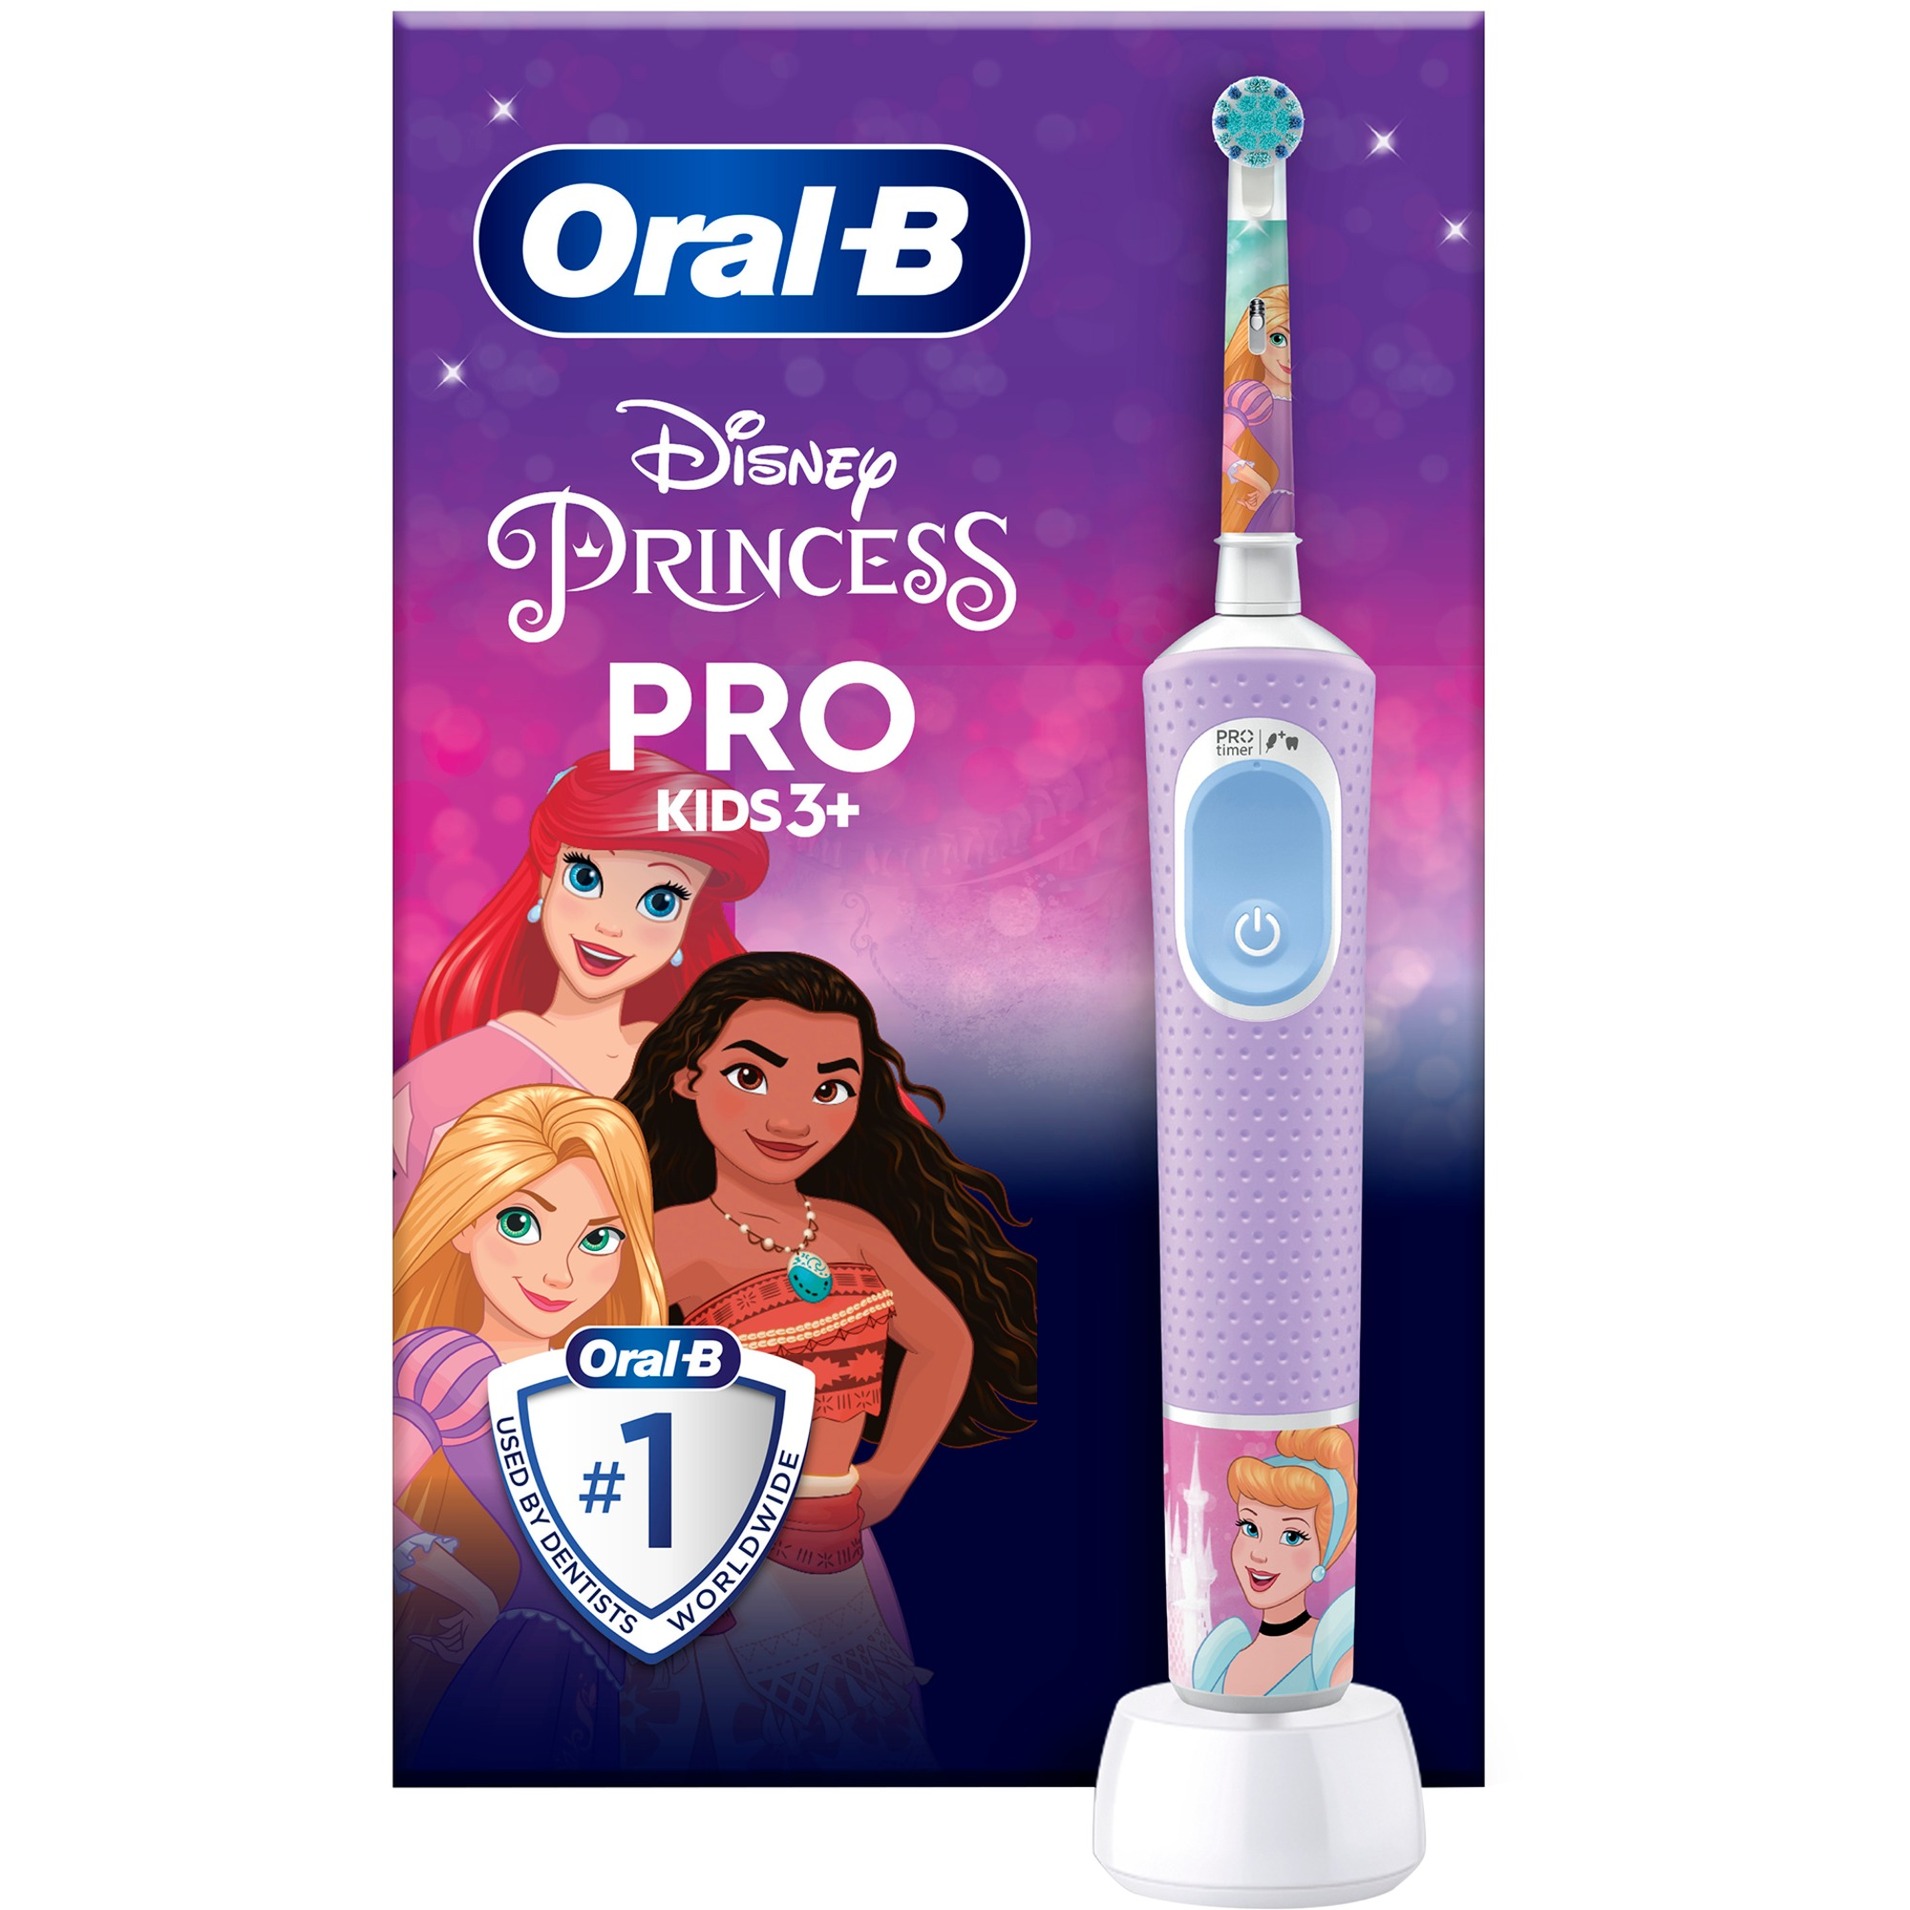 Oral-B Pro Kids Princess Elektrische Zahnbürste/Electric Toothbrush für Kinder ab 3 Jahren, inklusive Sensitiv+ Modus für Zahnpflege, extra weiche Borsten, 1 Aufsteckbürste, 4 Sticker, lila/blau